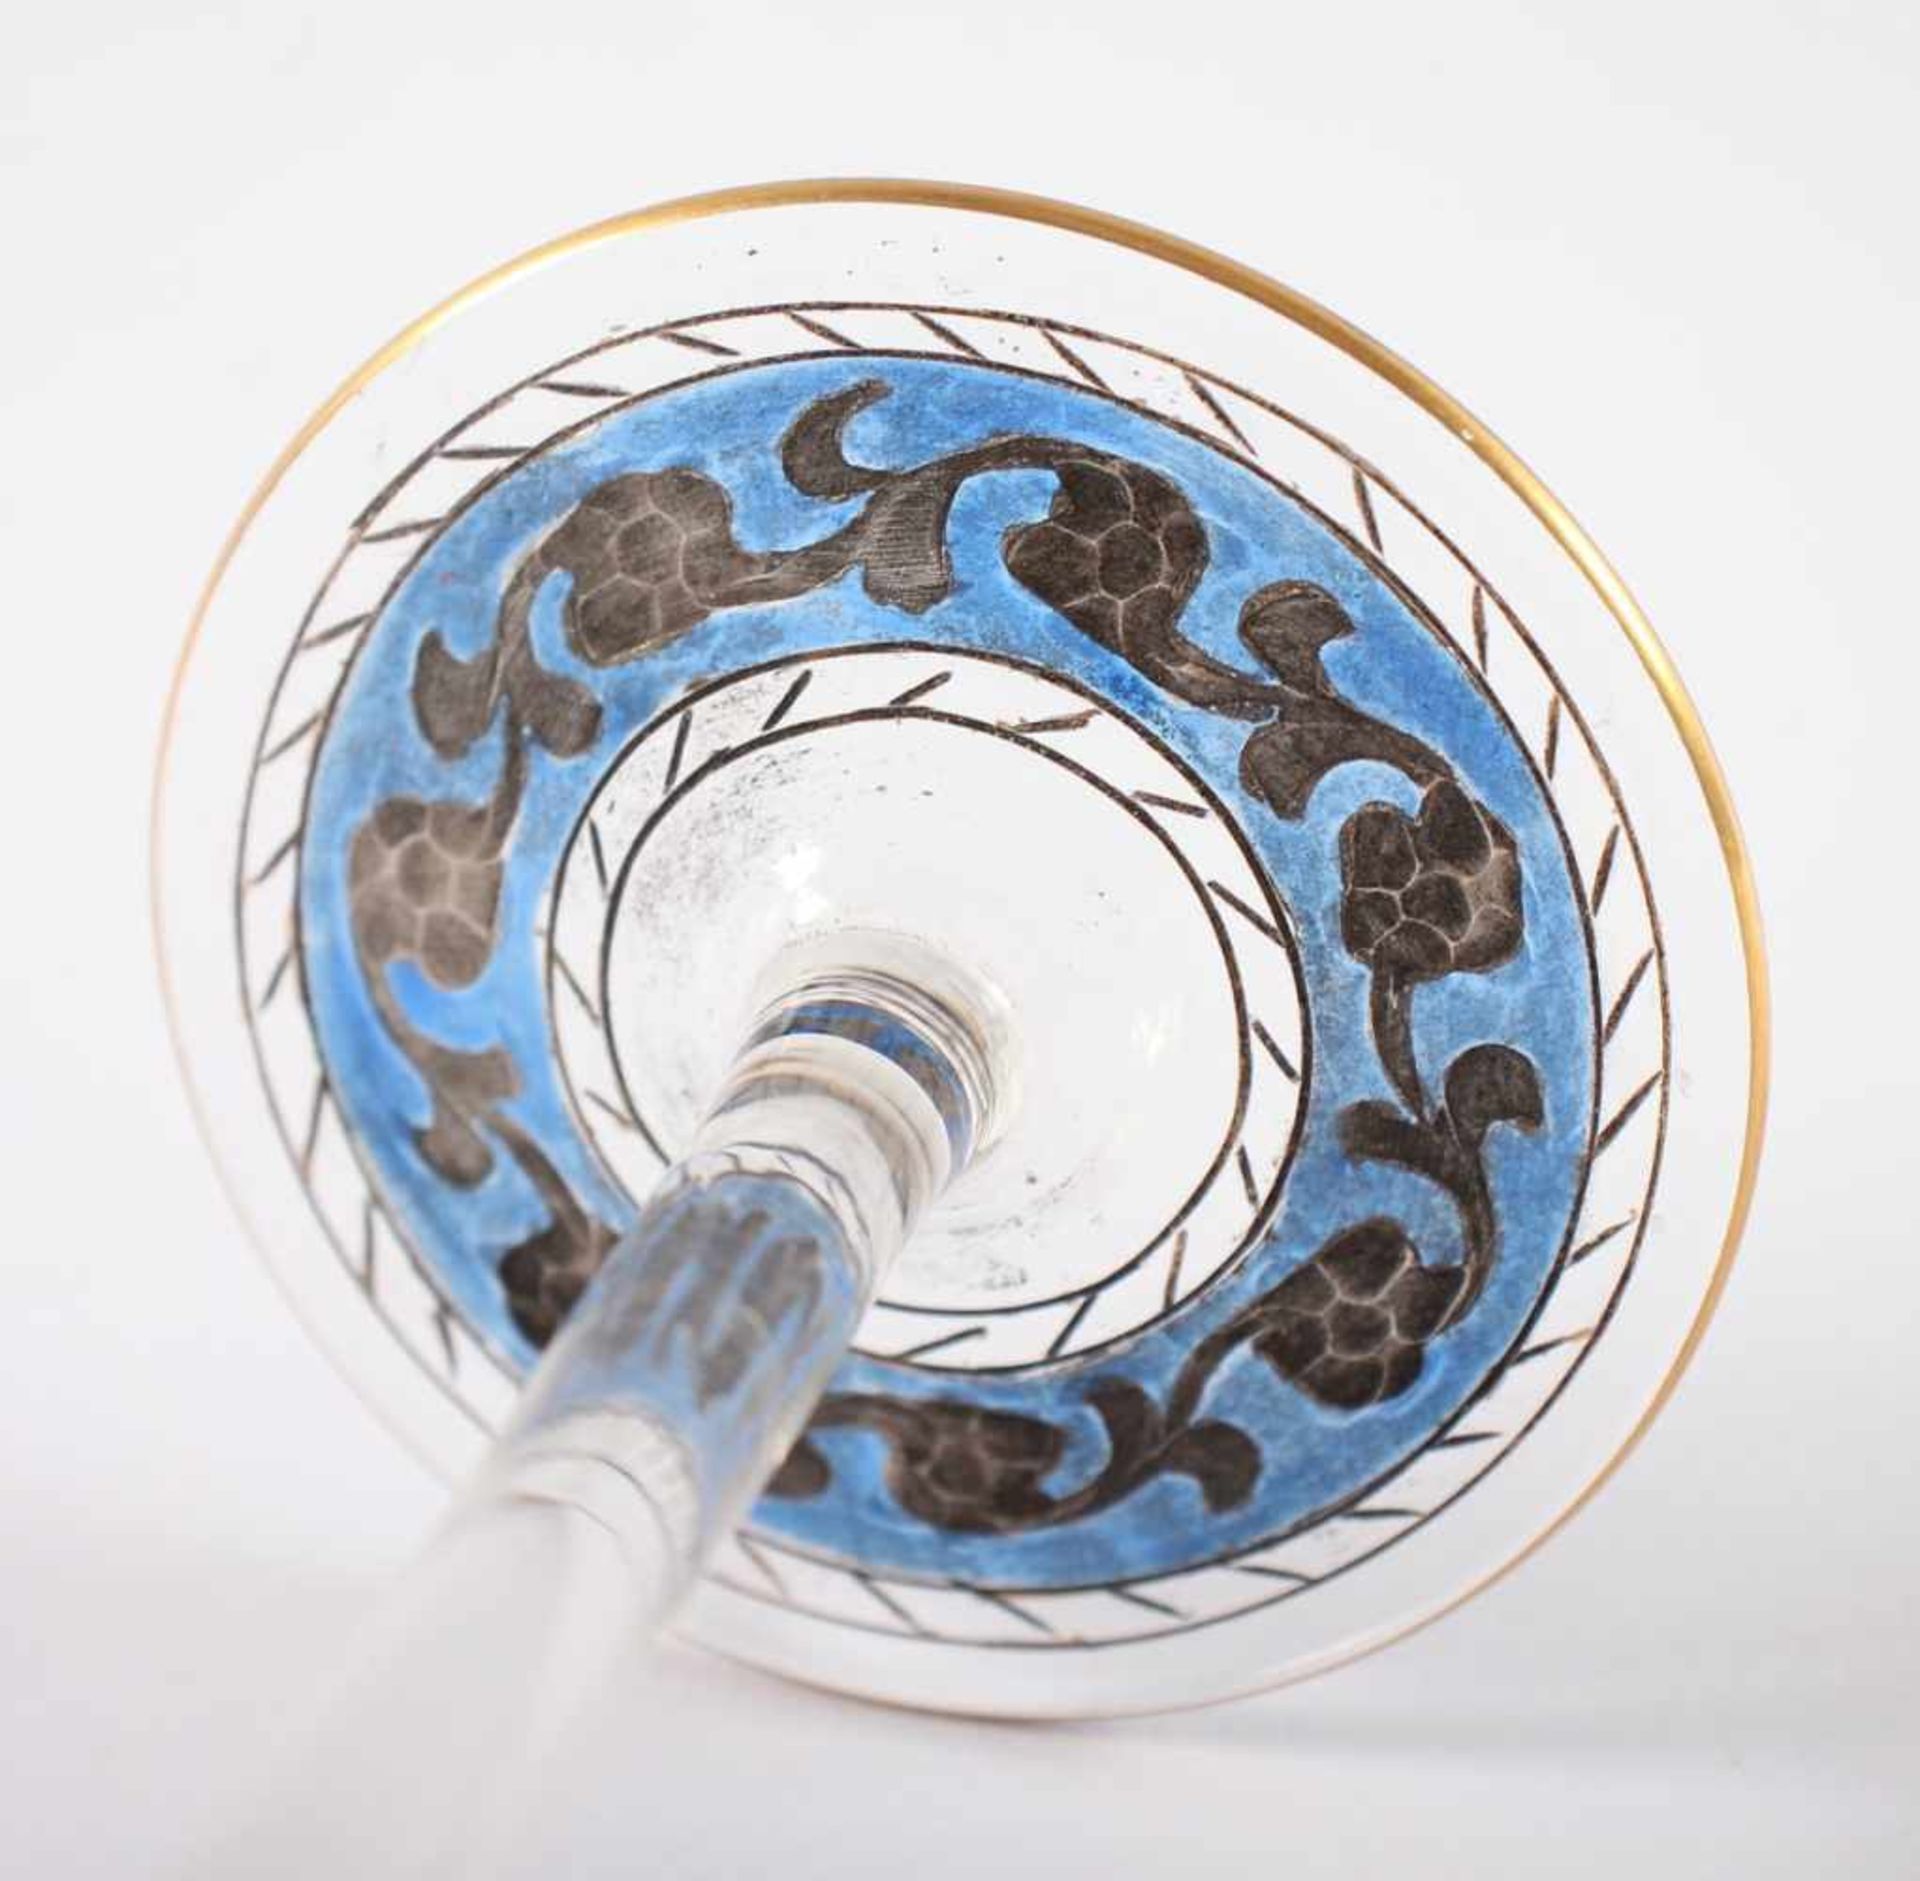 KELCHGLAS "JODHPUR", farbloses Glas, graviert, ornamentaler Dekor in polychromer Email- und - Bild 3 aus 3